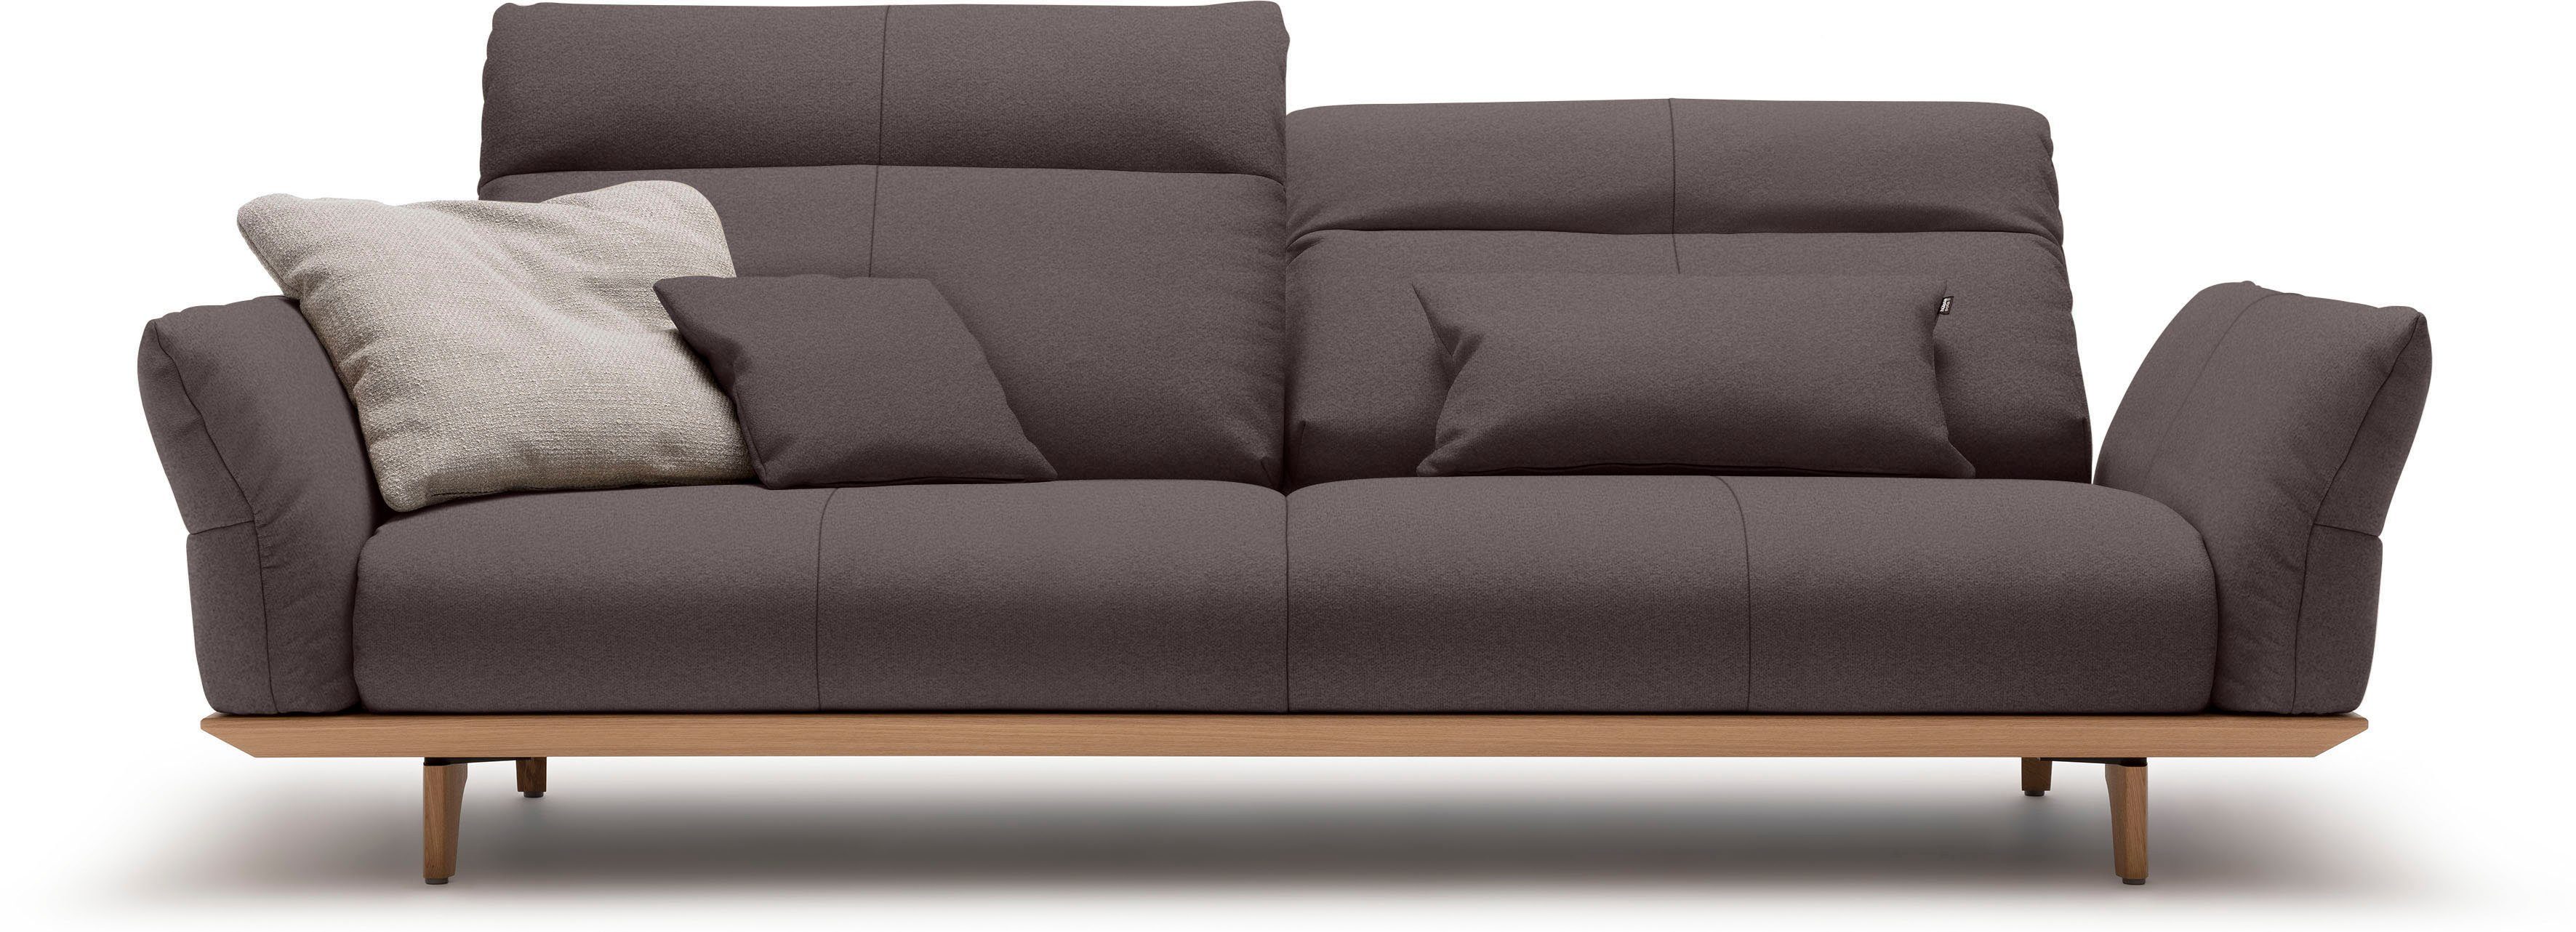 Füße cm sofa Breite Eiche, 228 natur, Eiche hs.460, hülsta in Sockel 3,5-Sitzer